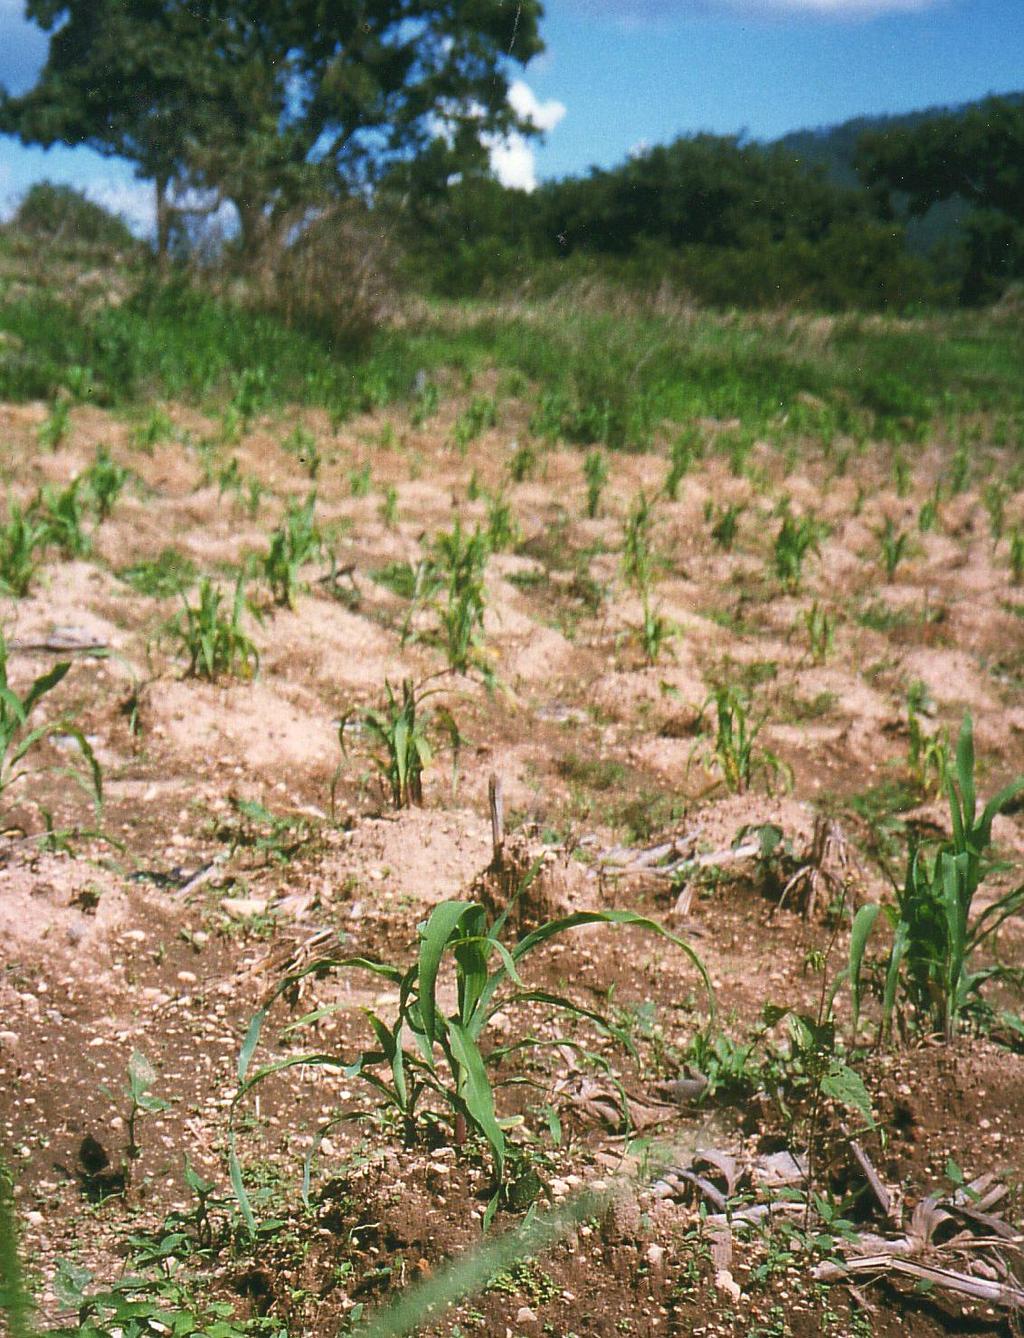 Wenn die Maispflanzen wachsen, gehen wir wieder auf die Milpa und häufen die Erde rund um die Pflanzen zu kleinen Hügeln auf. So stehen die Pflanzen geschützter und das Regenwasser läuft besser ab.